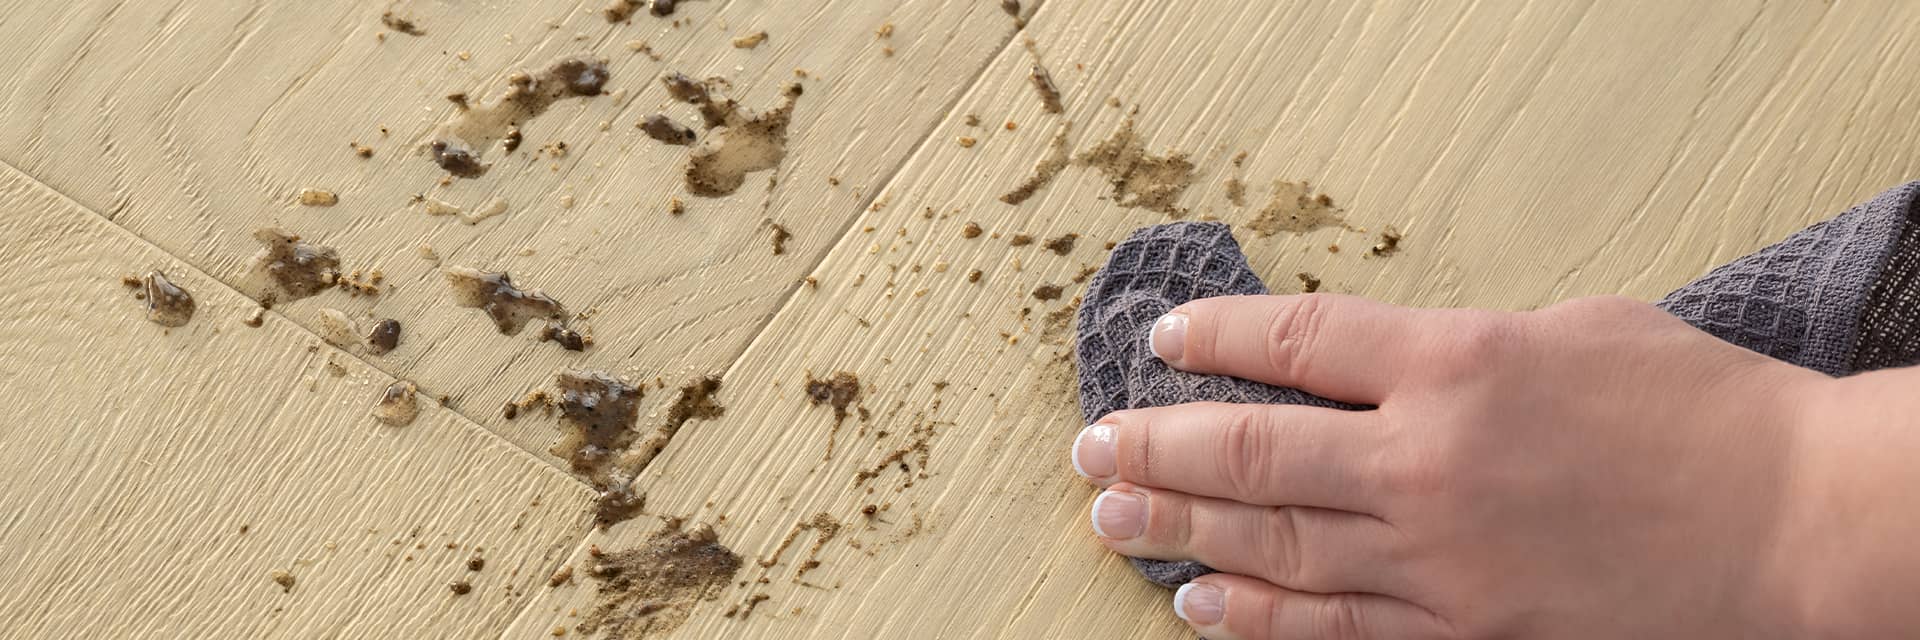 vrouw die modder van een beige hardhouten vloer veegt met een microvezeldoek